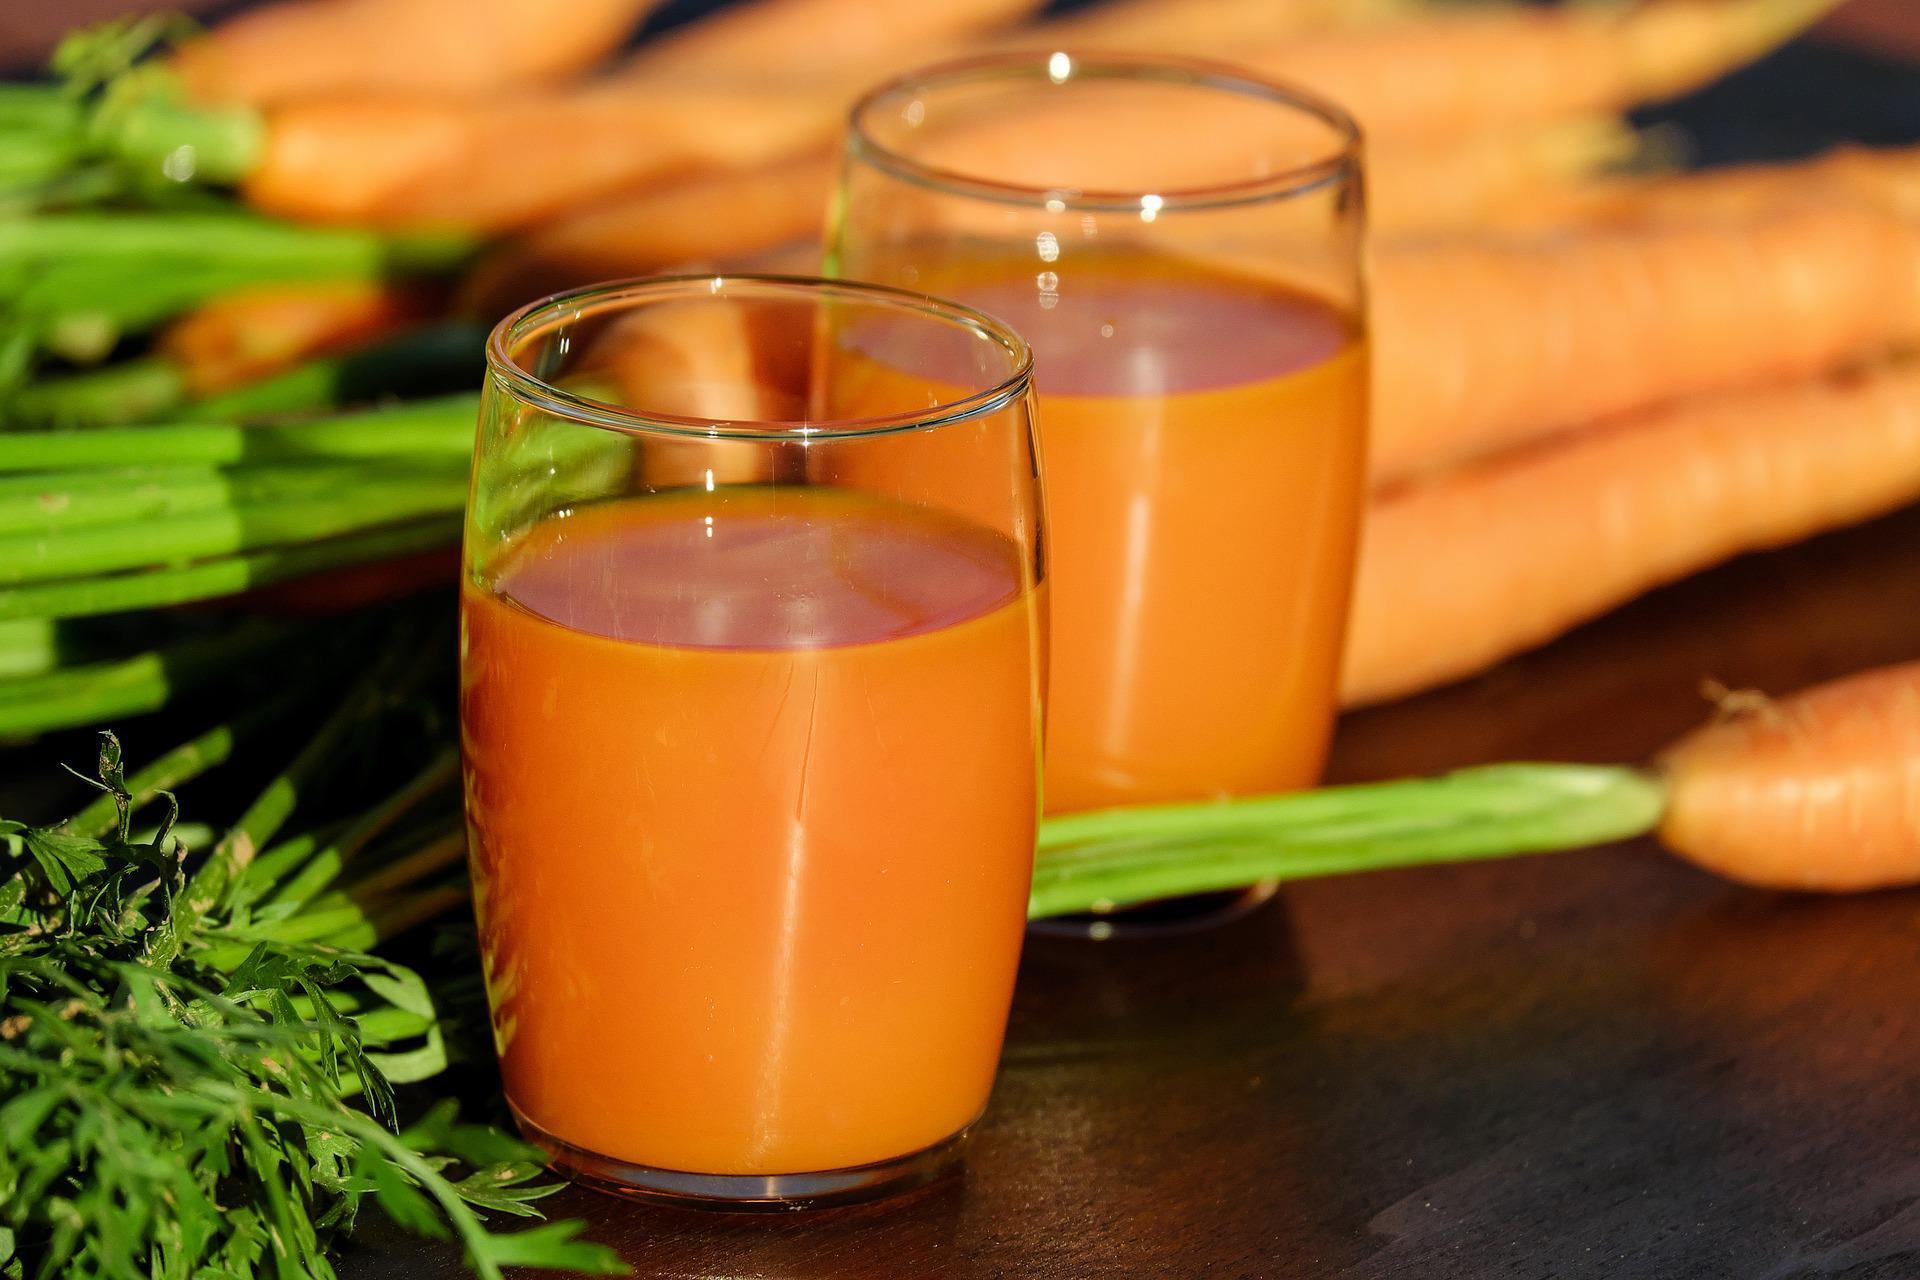 Apetyt na marchew. 5 powodów dla których warto pić sok marchwiowy wiosną i latem